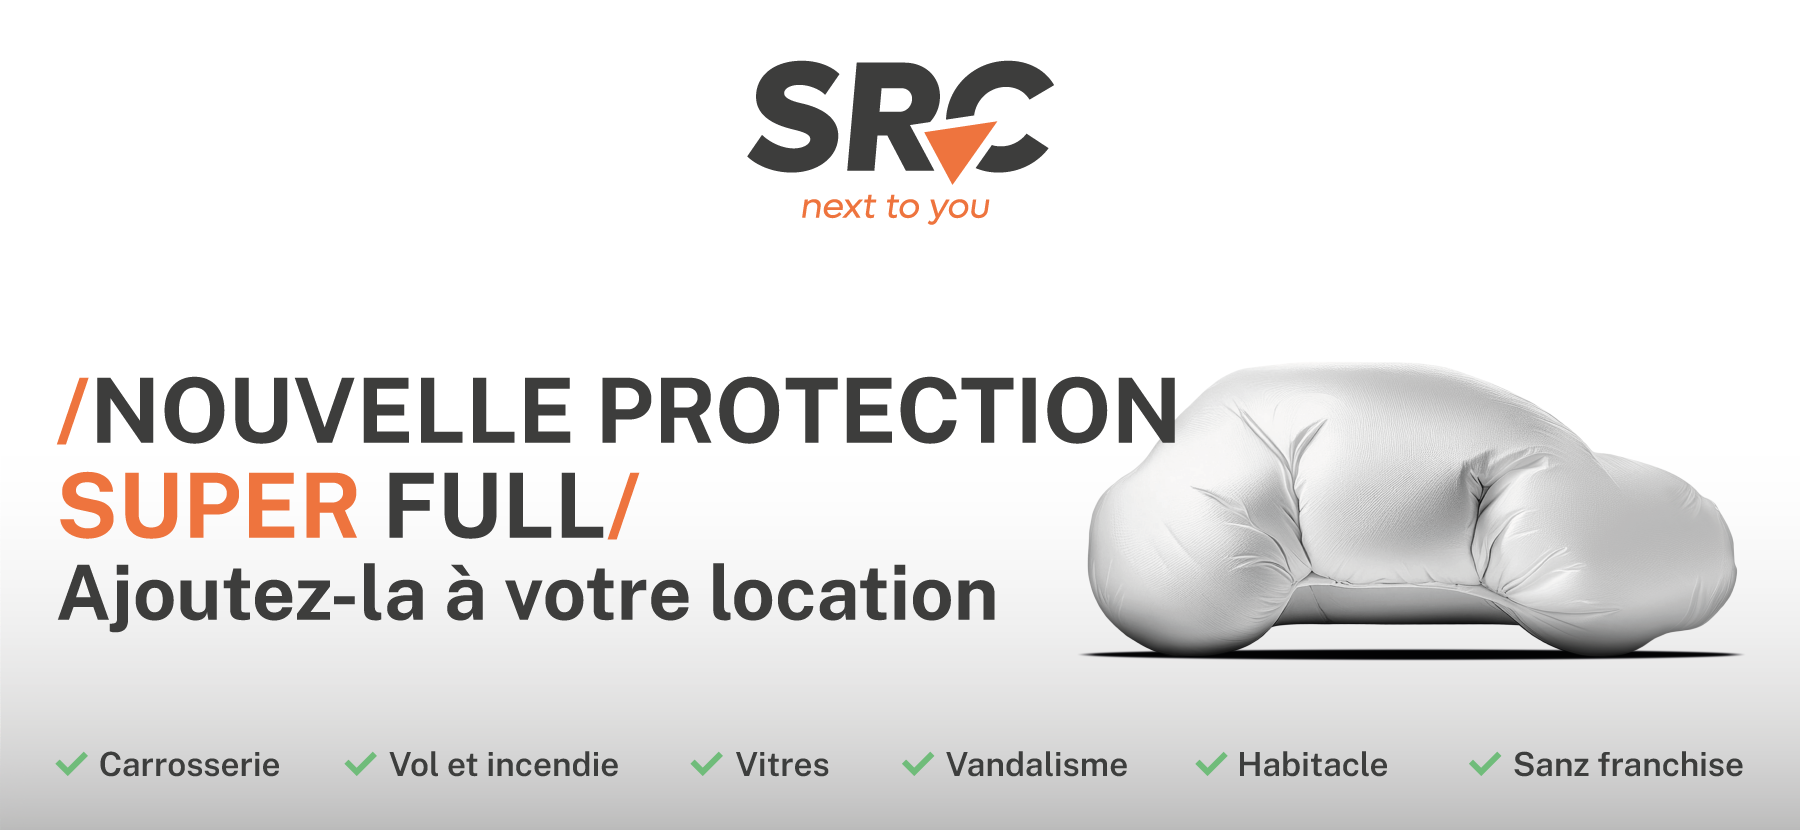 SRC_nouvelle protection super full